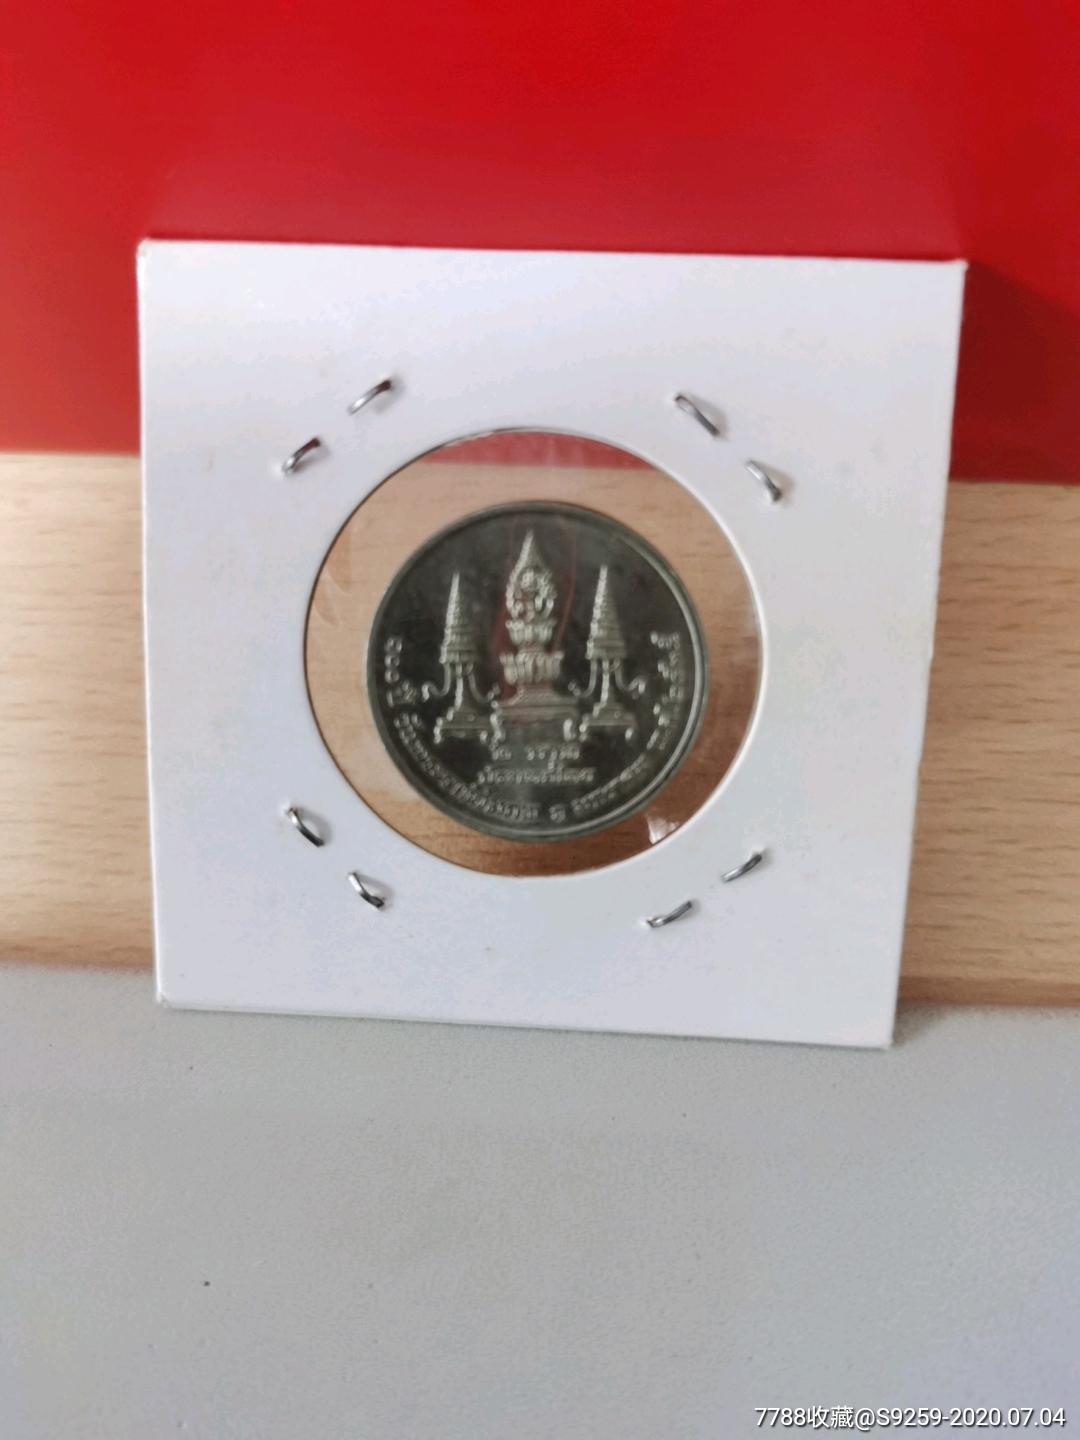 集合泰国硬币 库存照片. 图片 包括有 替换, 地标, 发光, 背包, 轰隆的, 发芽, 泰铢, 设置, 拱道 - 67855546